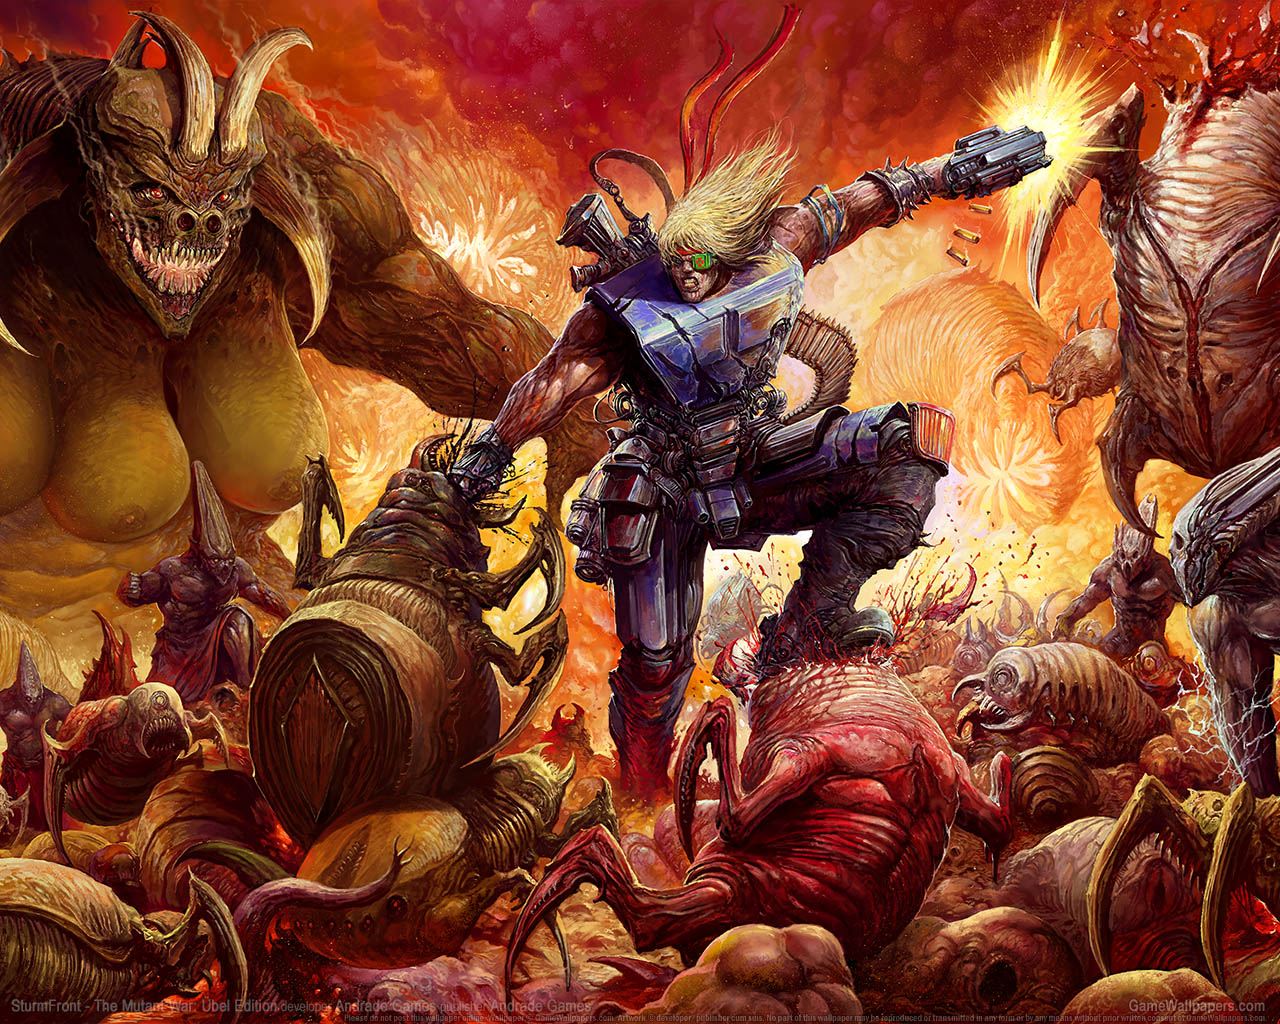 SturmFront - The Mutant War: Ubel Edition fondo de escritorio 01 1280x1024